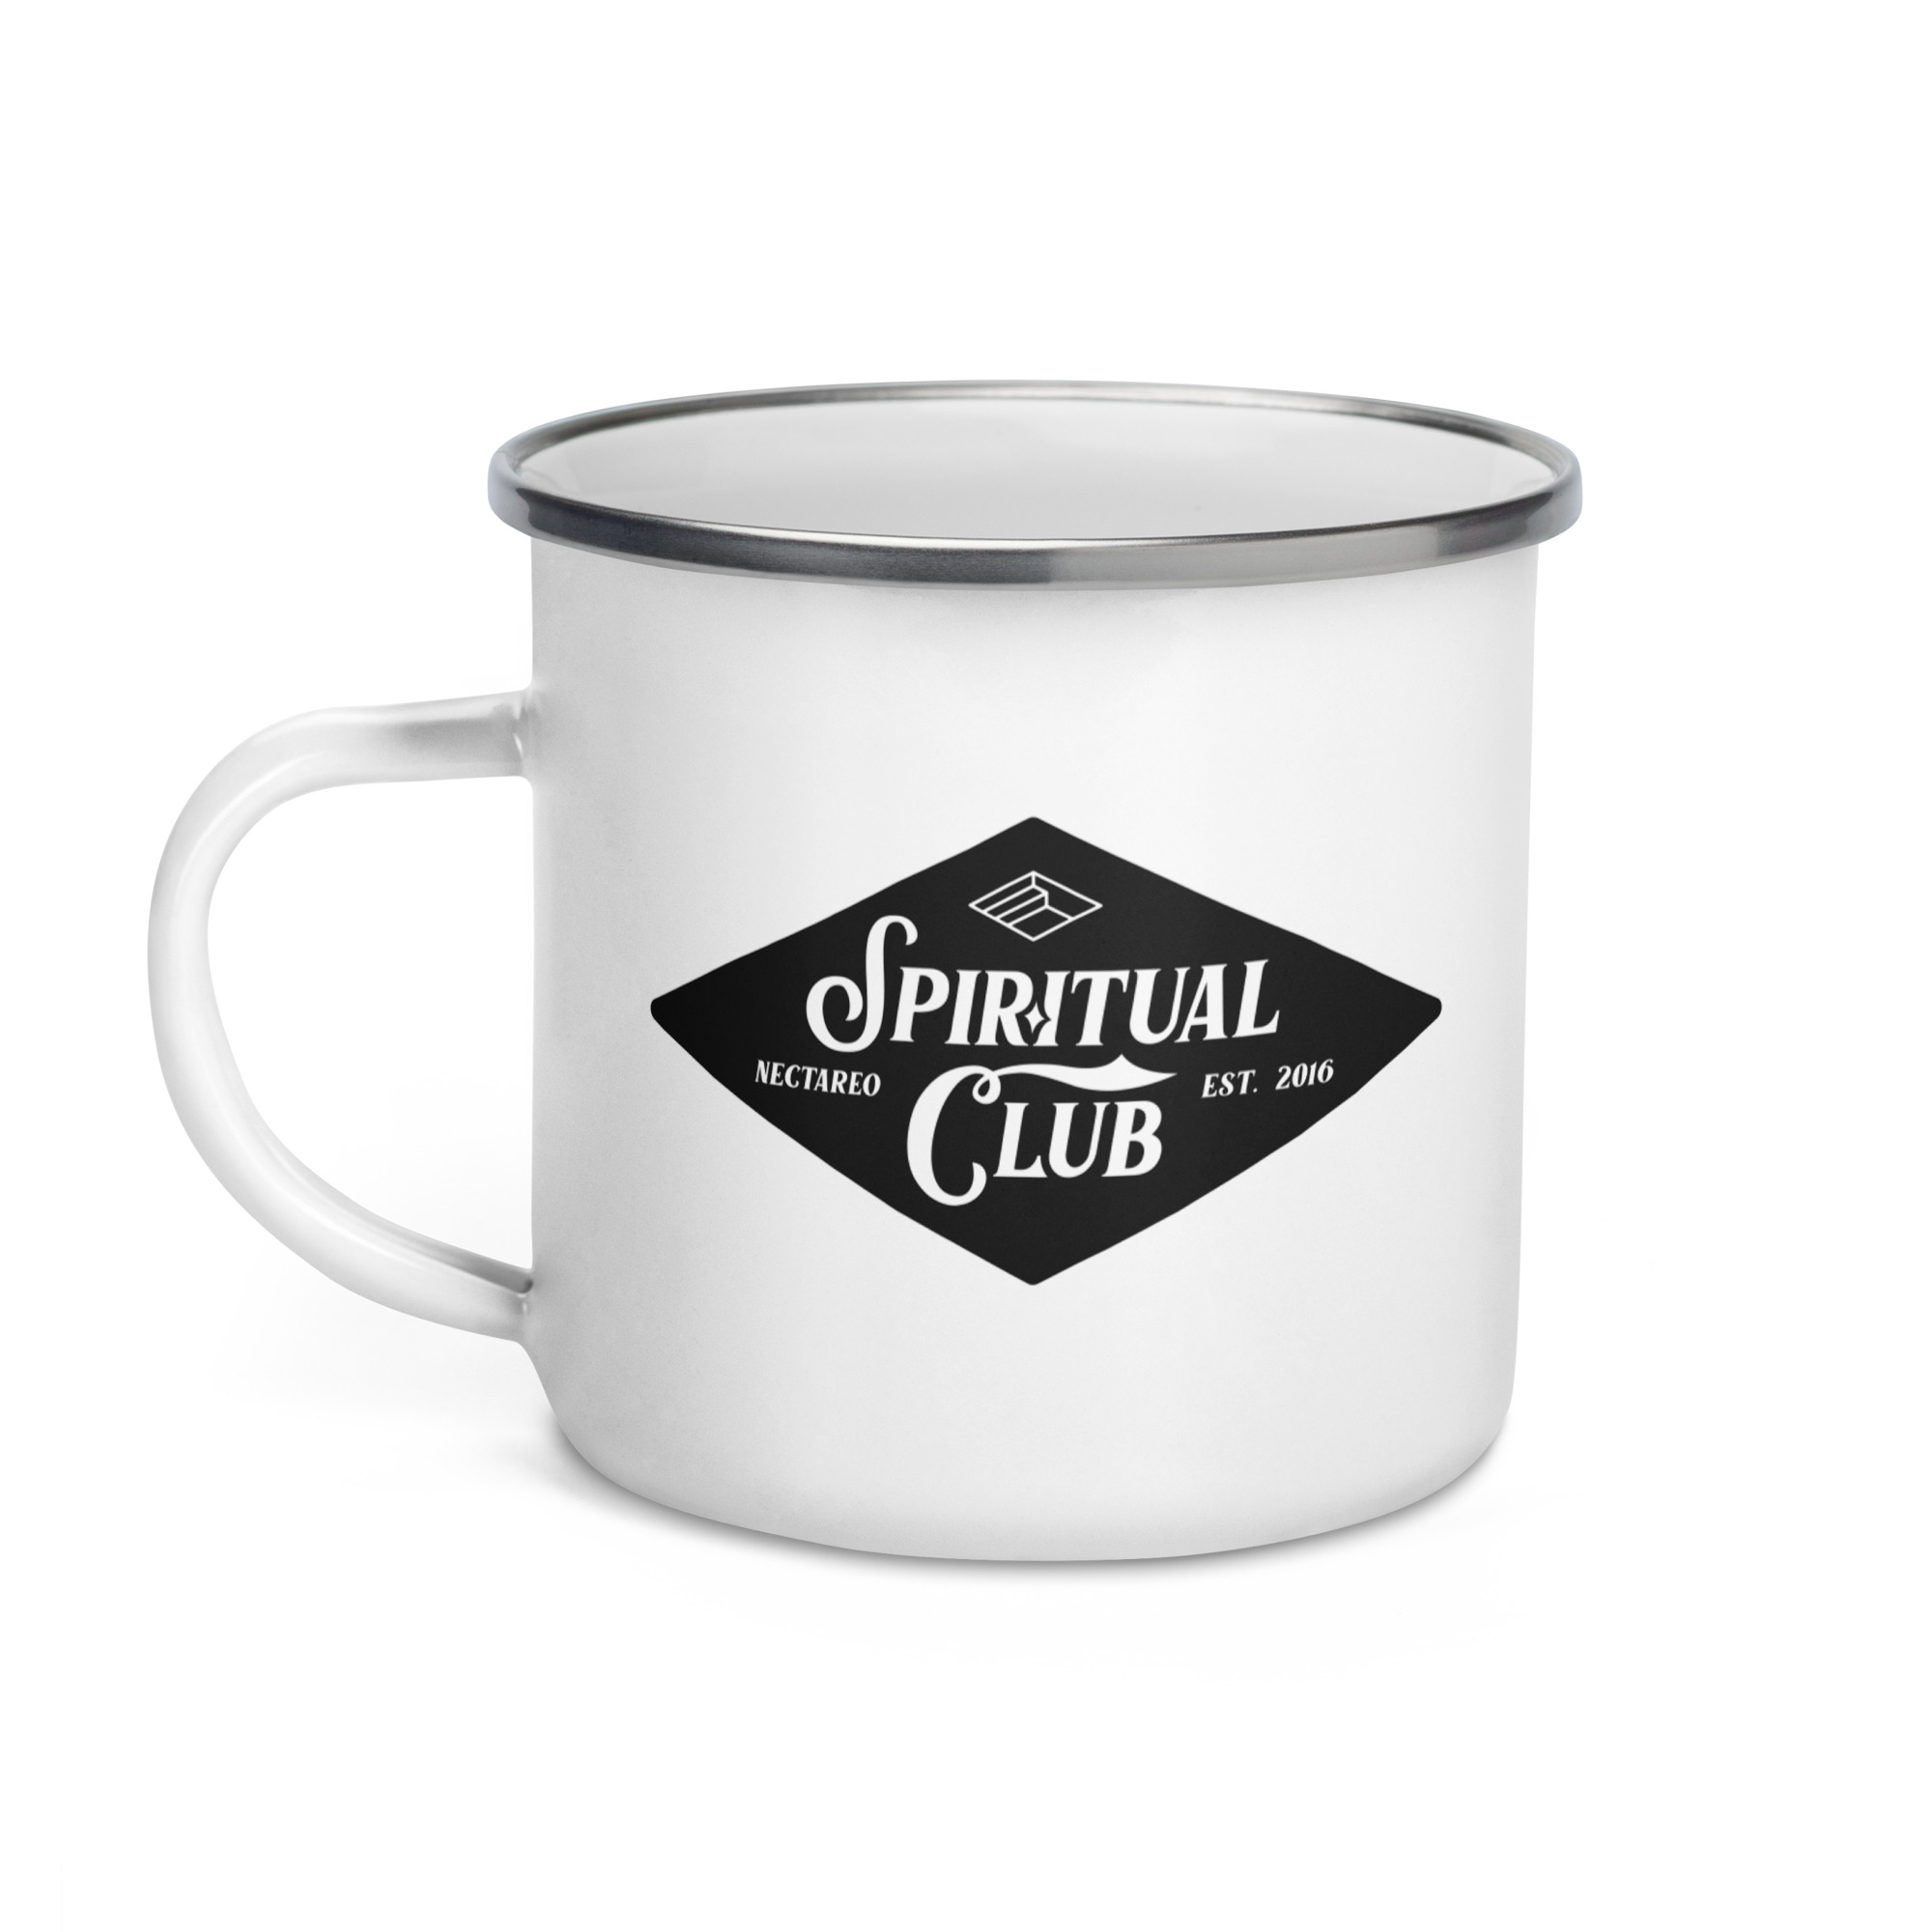 'Spiritual Club' Enamel Mug